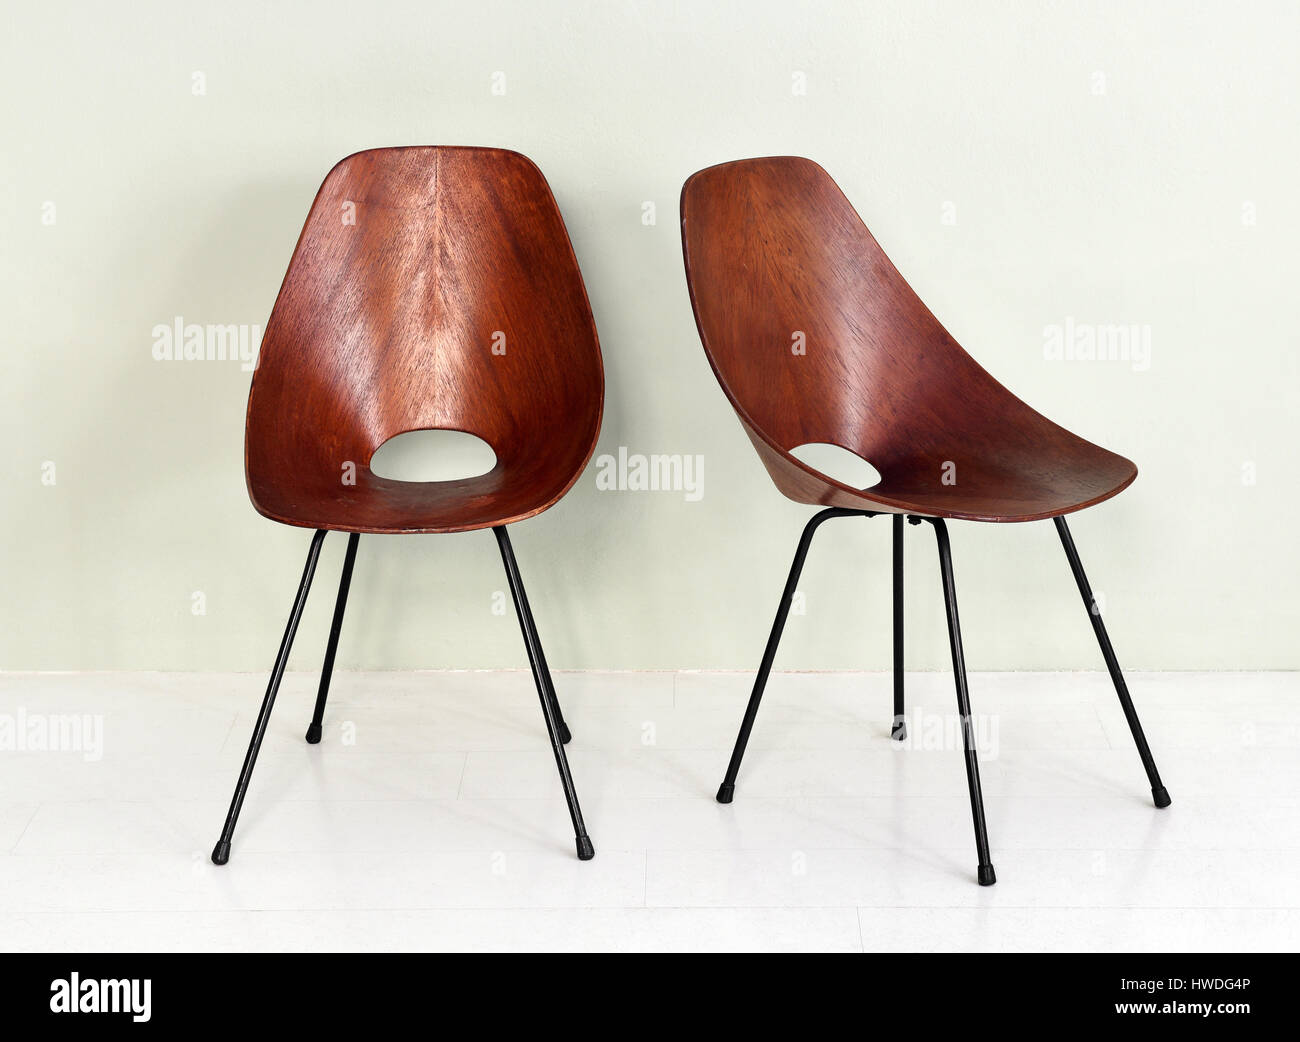 De Meubles anciens Paire de chaises en bois rond rétro noir avec pattes de métal dans la pièce avec un fond blanc et marbre Banque D'Images